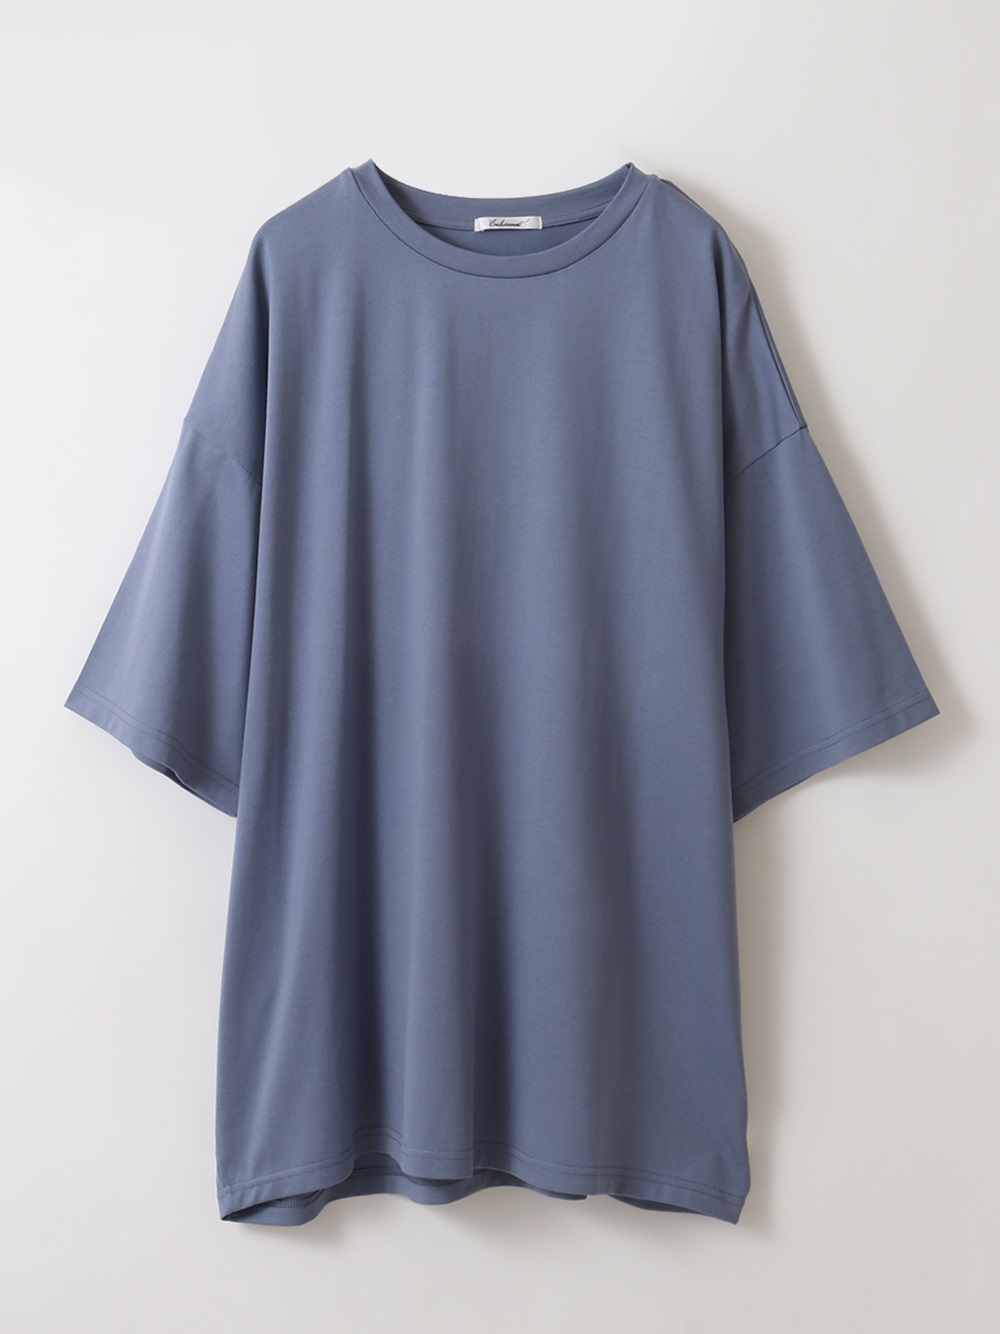 Cotton T shirt(72サックスブルー-１)